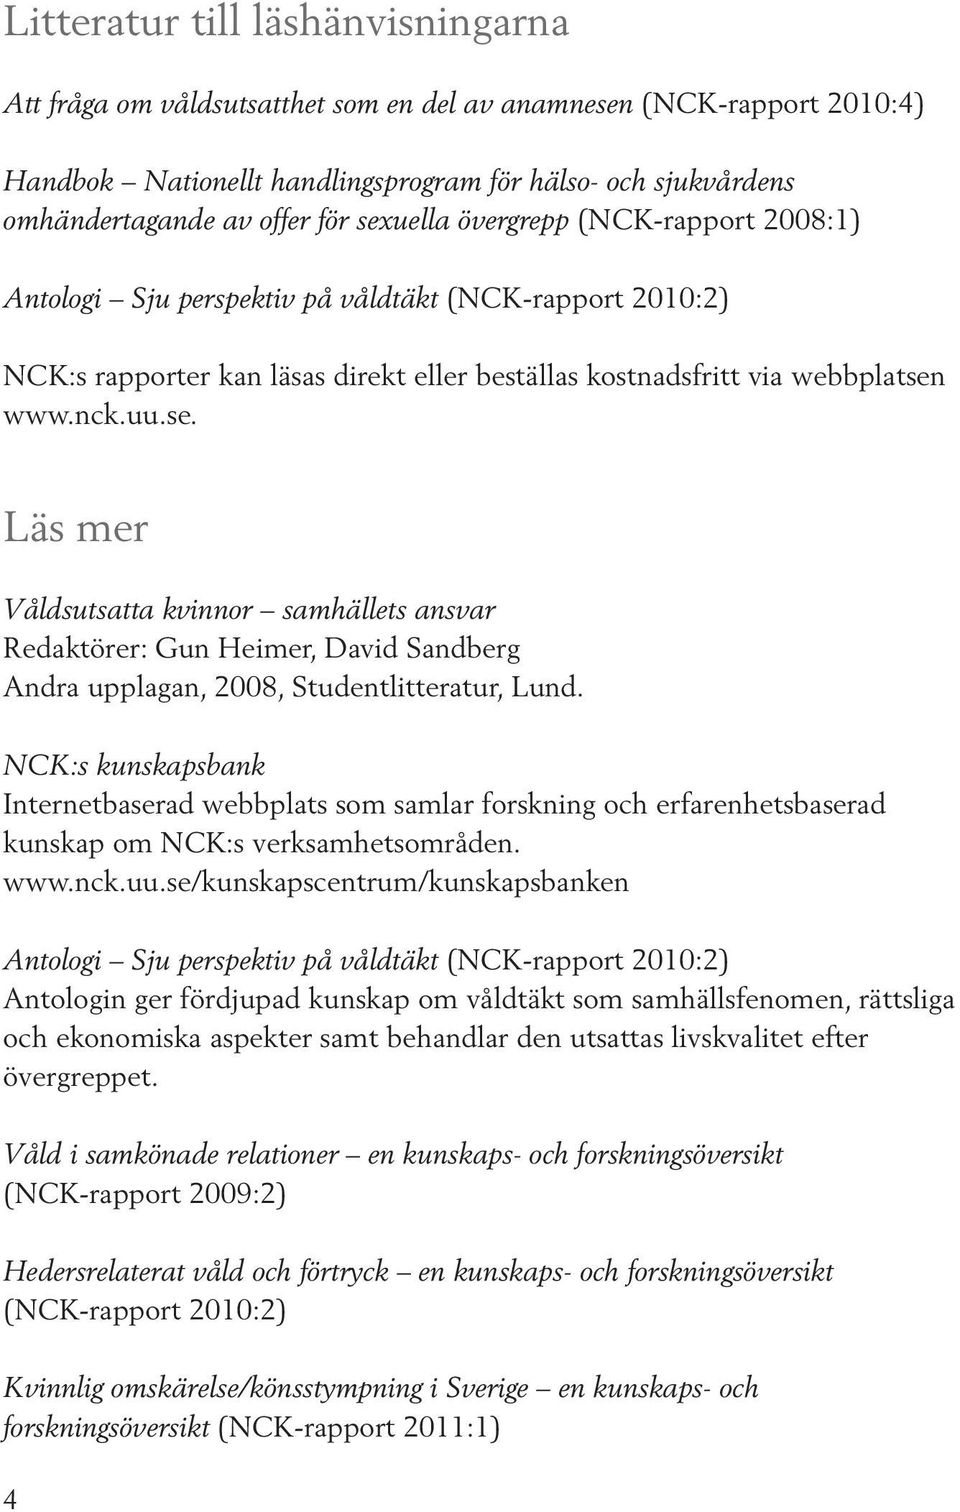 NCK:s kunskapsbank Internetbaserad webbplats som samlar forskning och erfarenhetsbaserad kunskap om NCK:s verksamhetsområden. www.nck.uu.